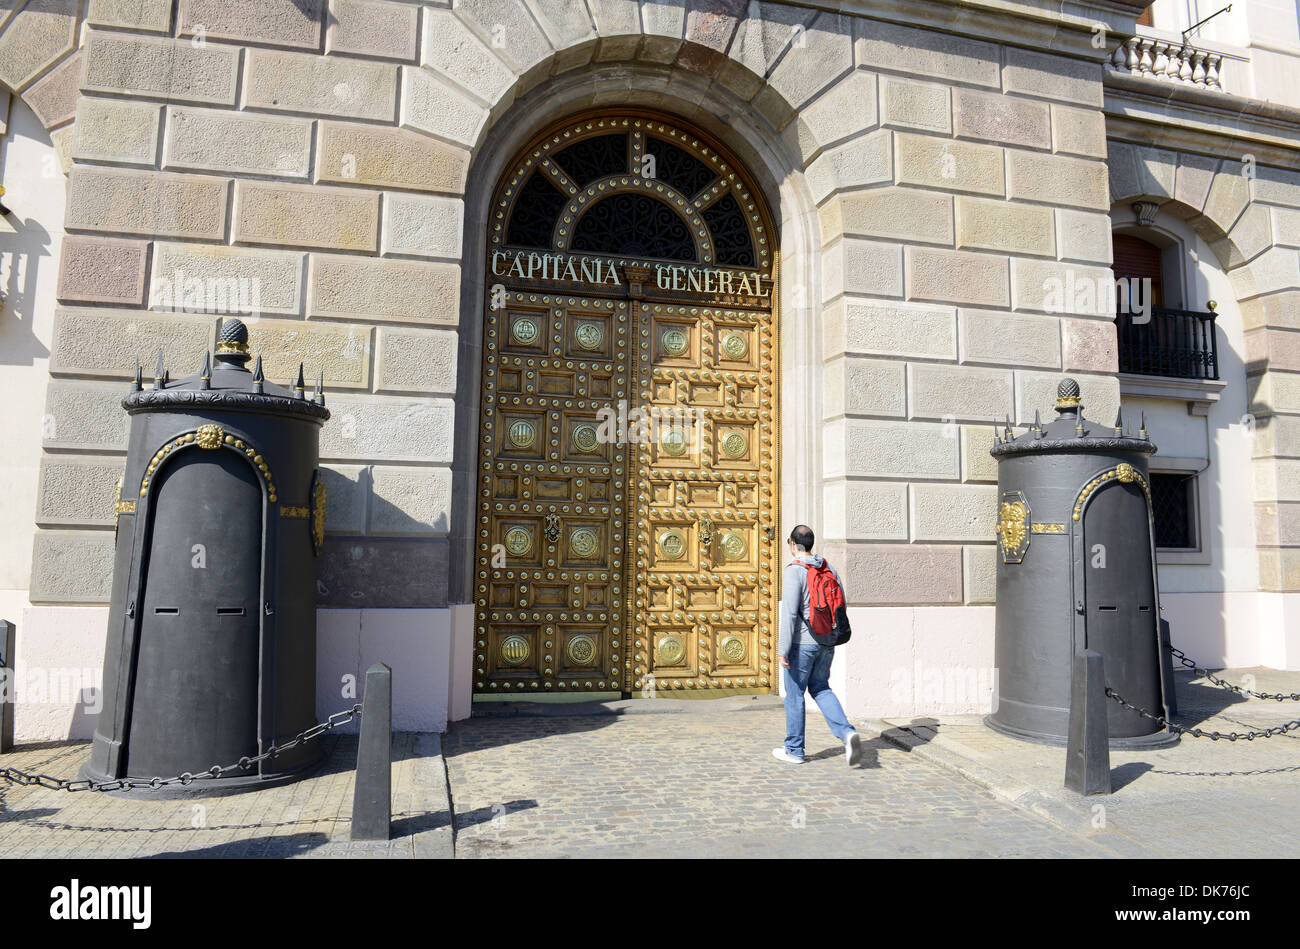 Orné restauré porte de l'Palacio De Capitania General De Barcelone, ancien couvent de la Catalogne, Barcelone, Espagne Banque D'Images